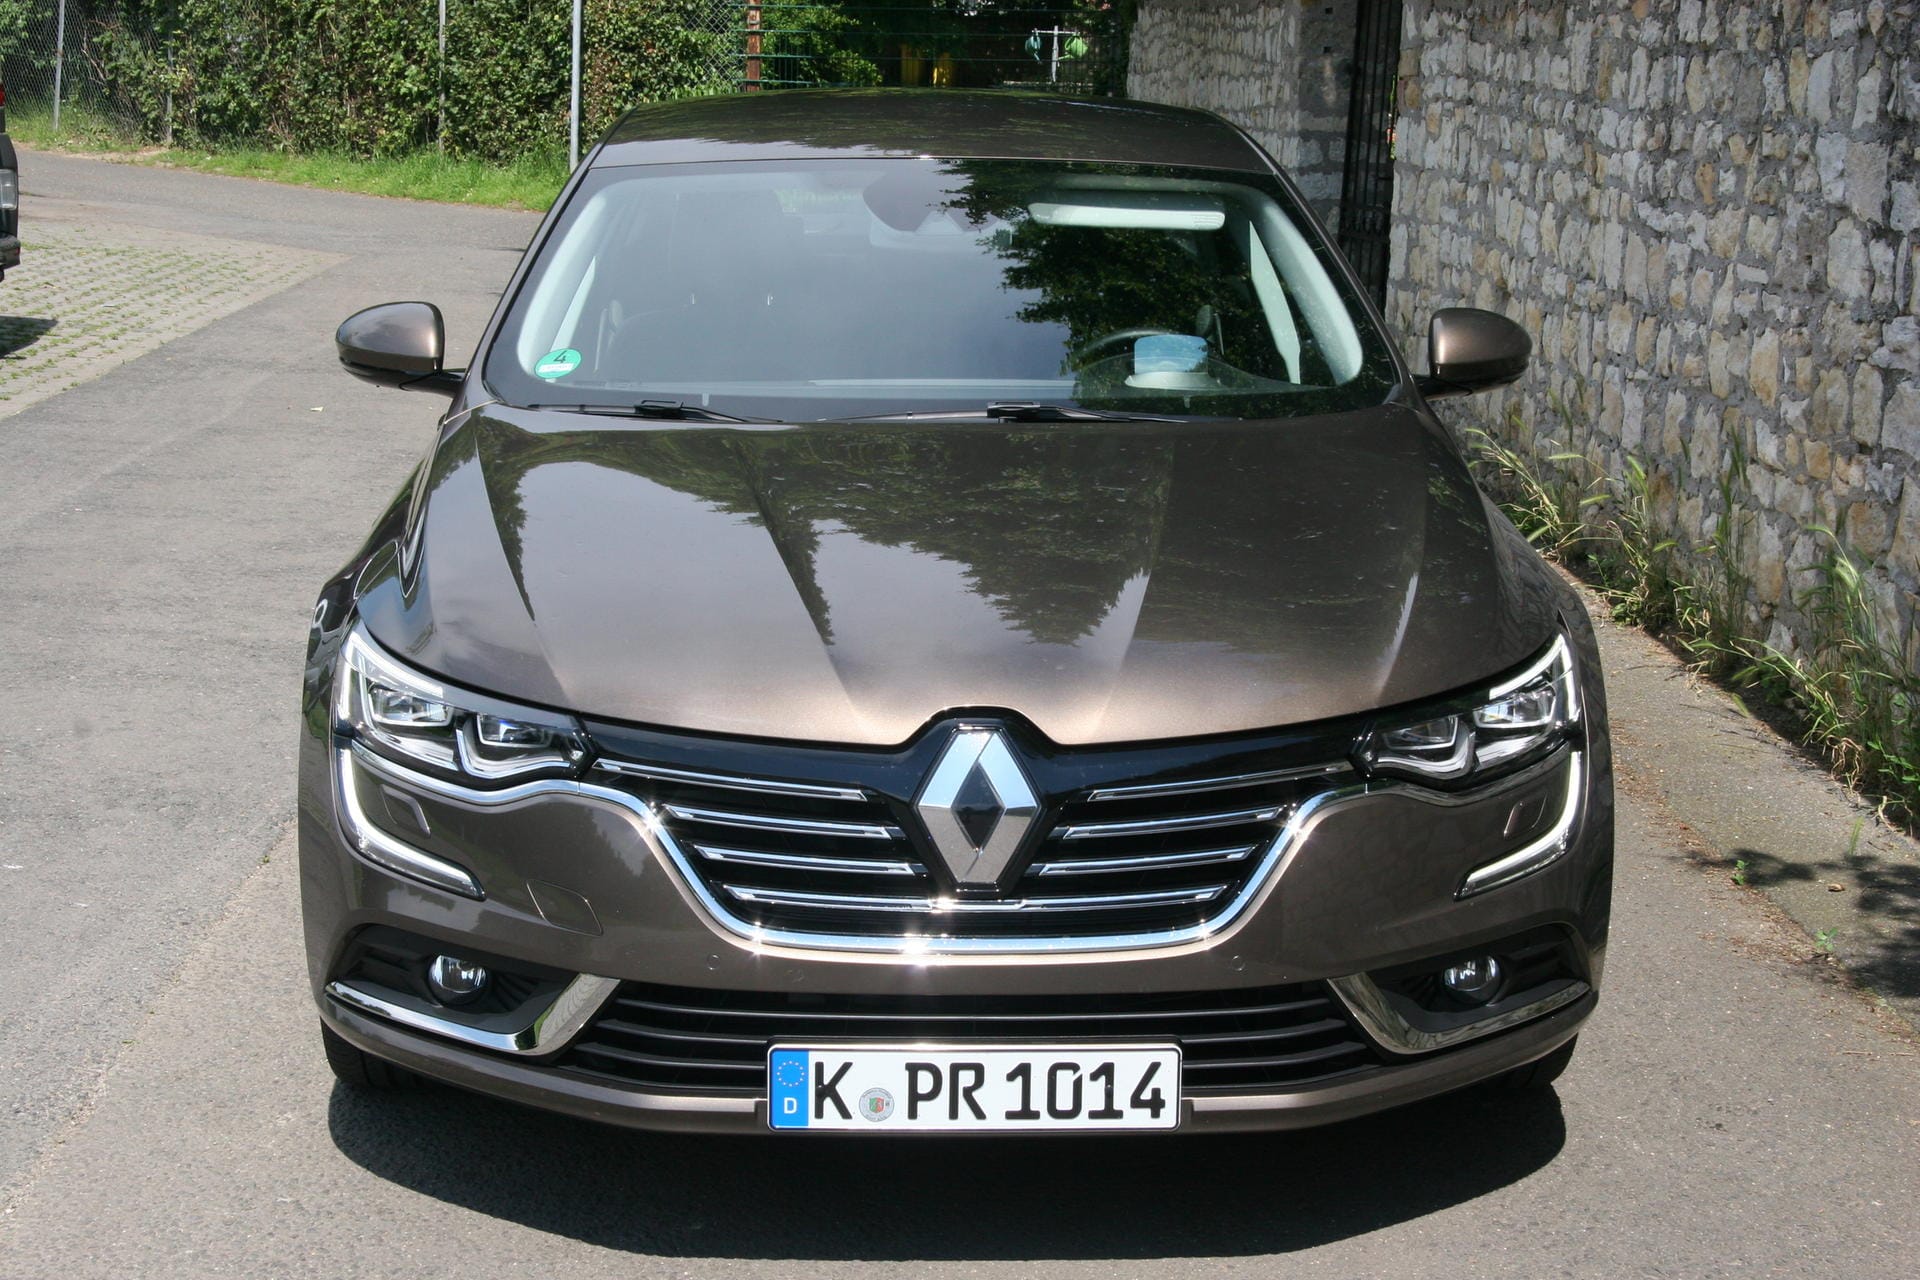 Stattliche und elegante Limousine: Der Renault Talisman.